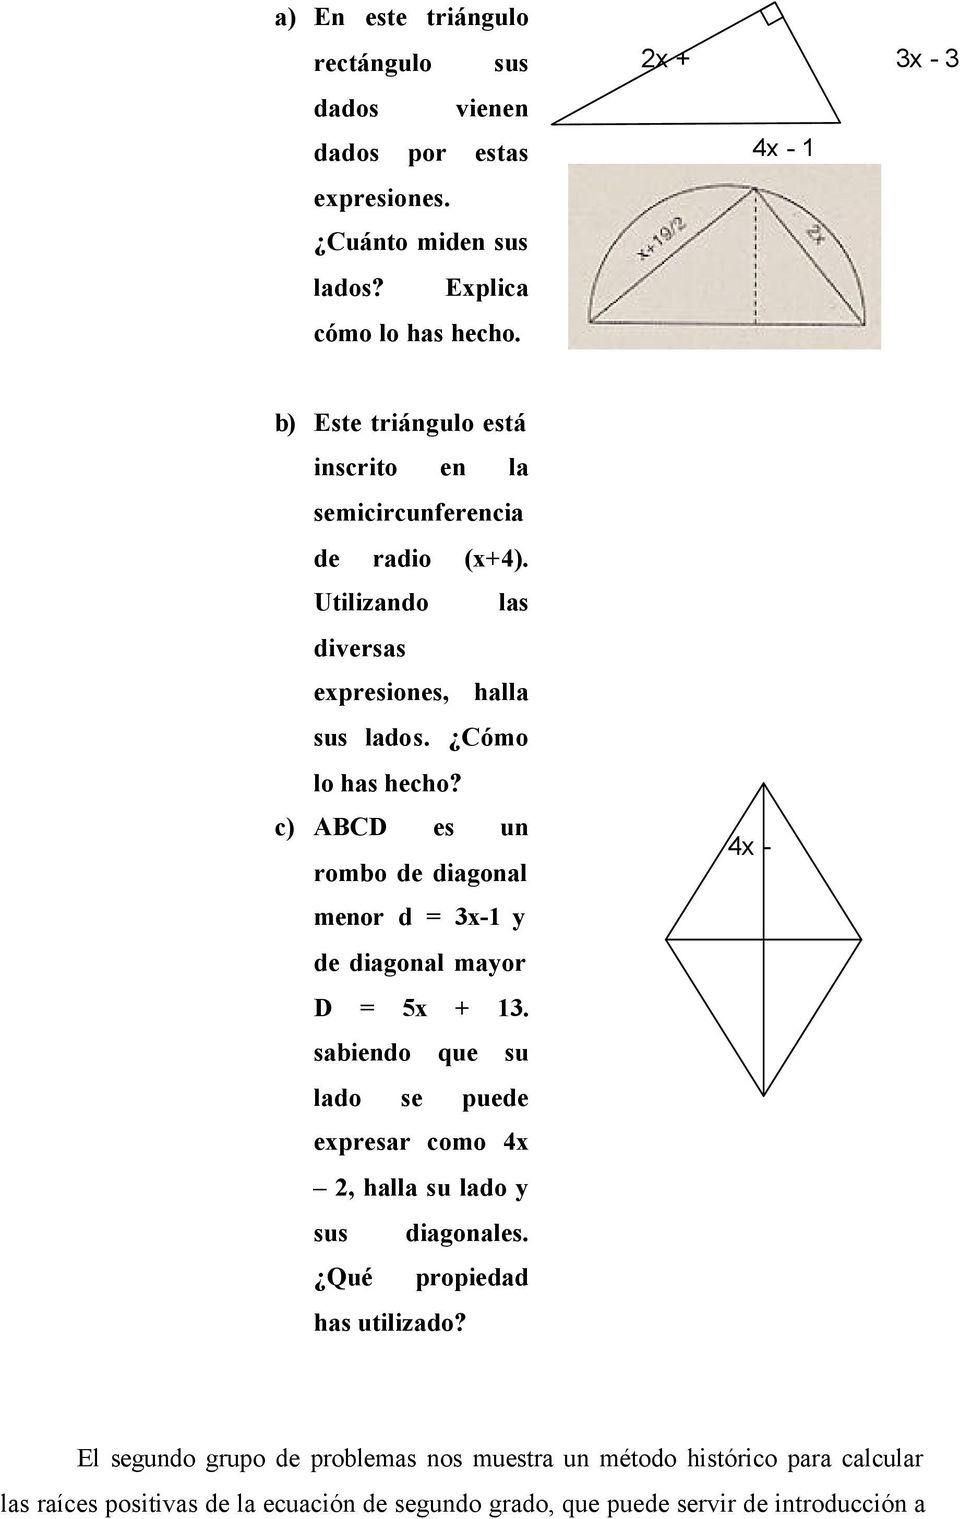 c) ABCD es un rombo de diagonal 4x - menor d = 3x-1 y de diagonal mayor D = 5x + 13.